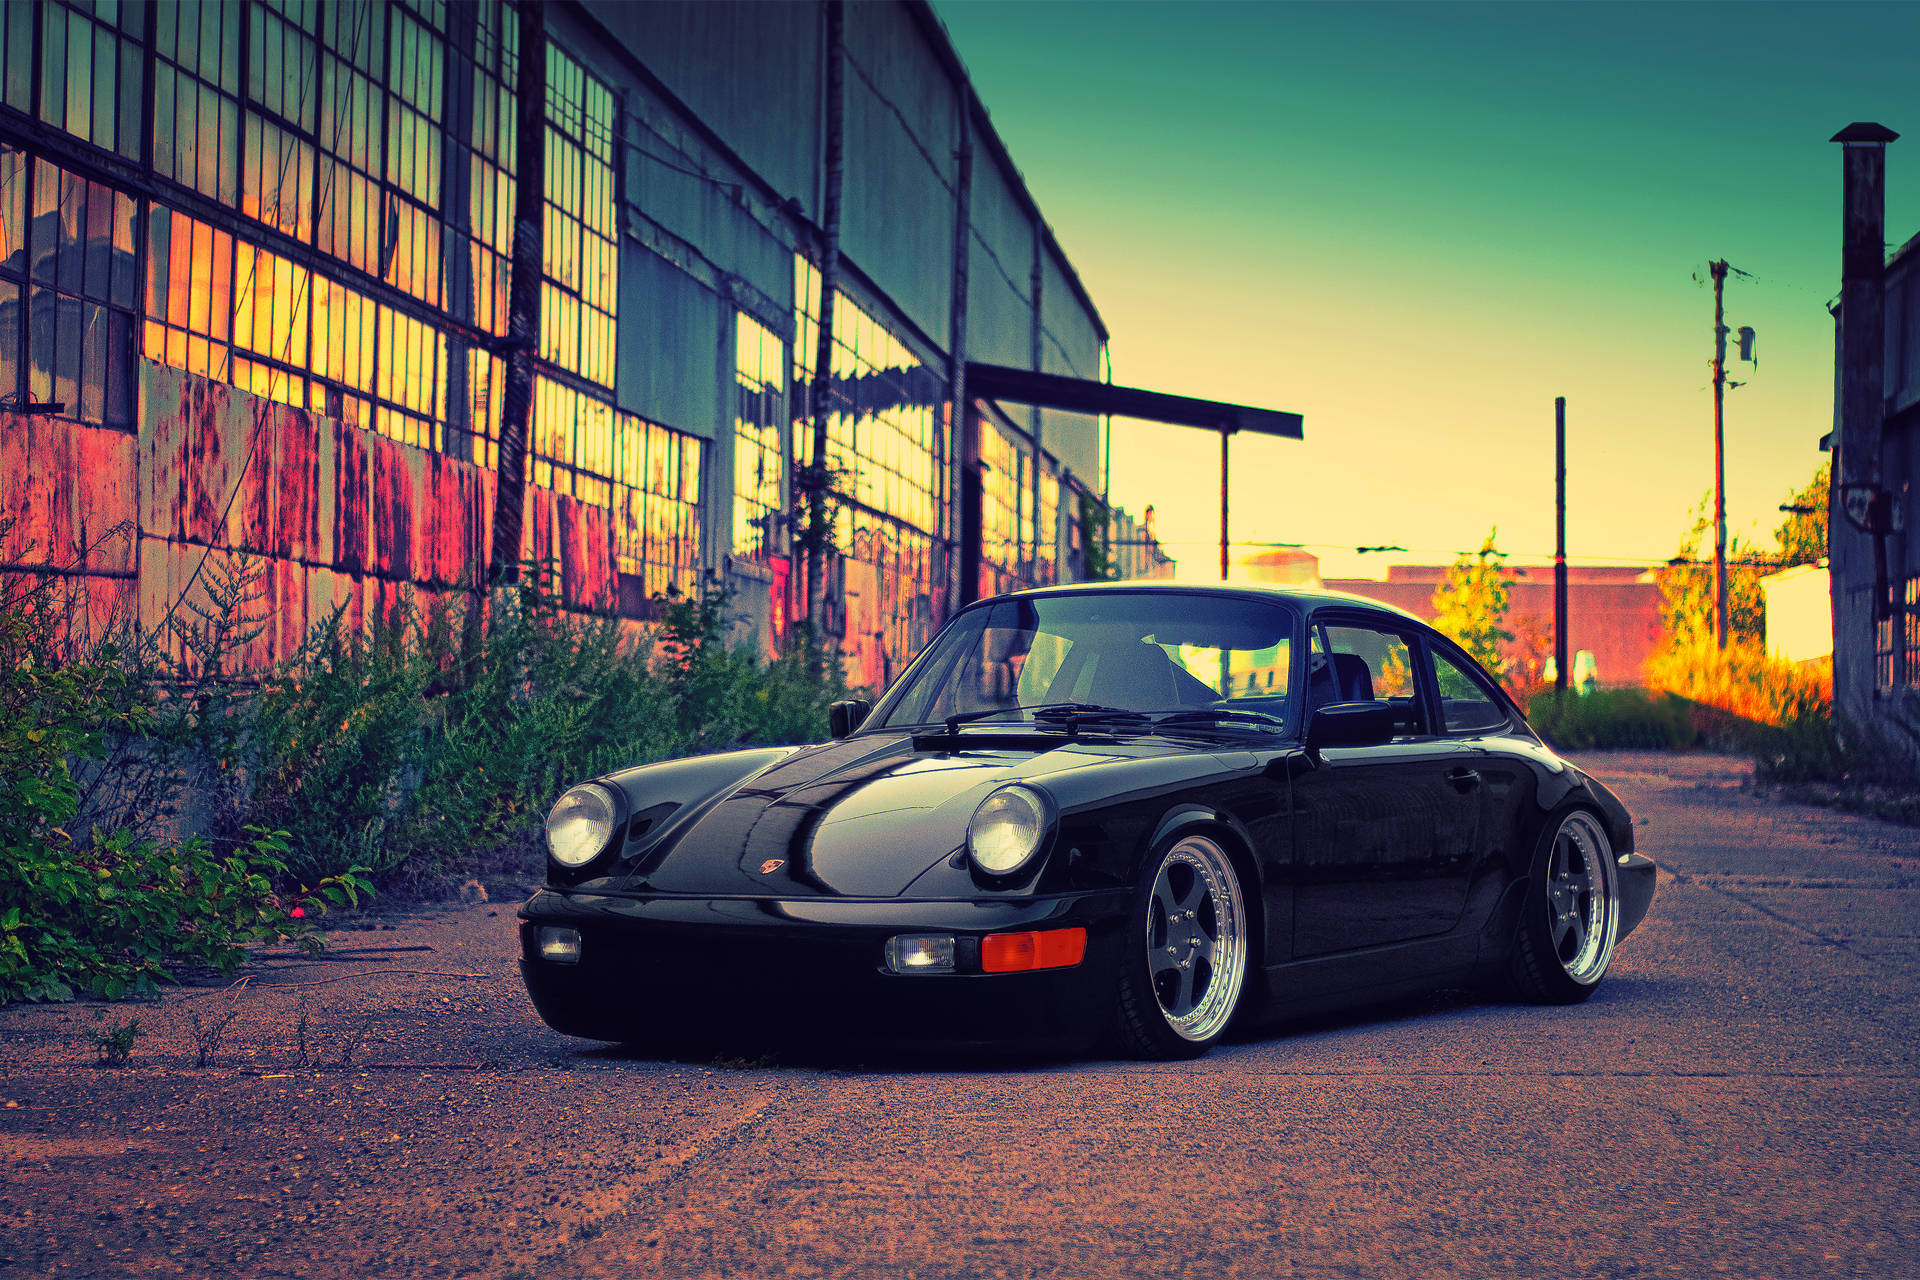 Black Porsche 964 In Sunset Background